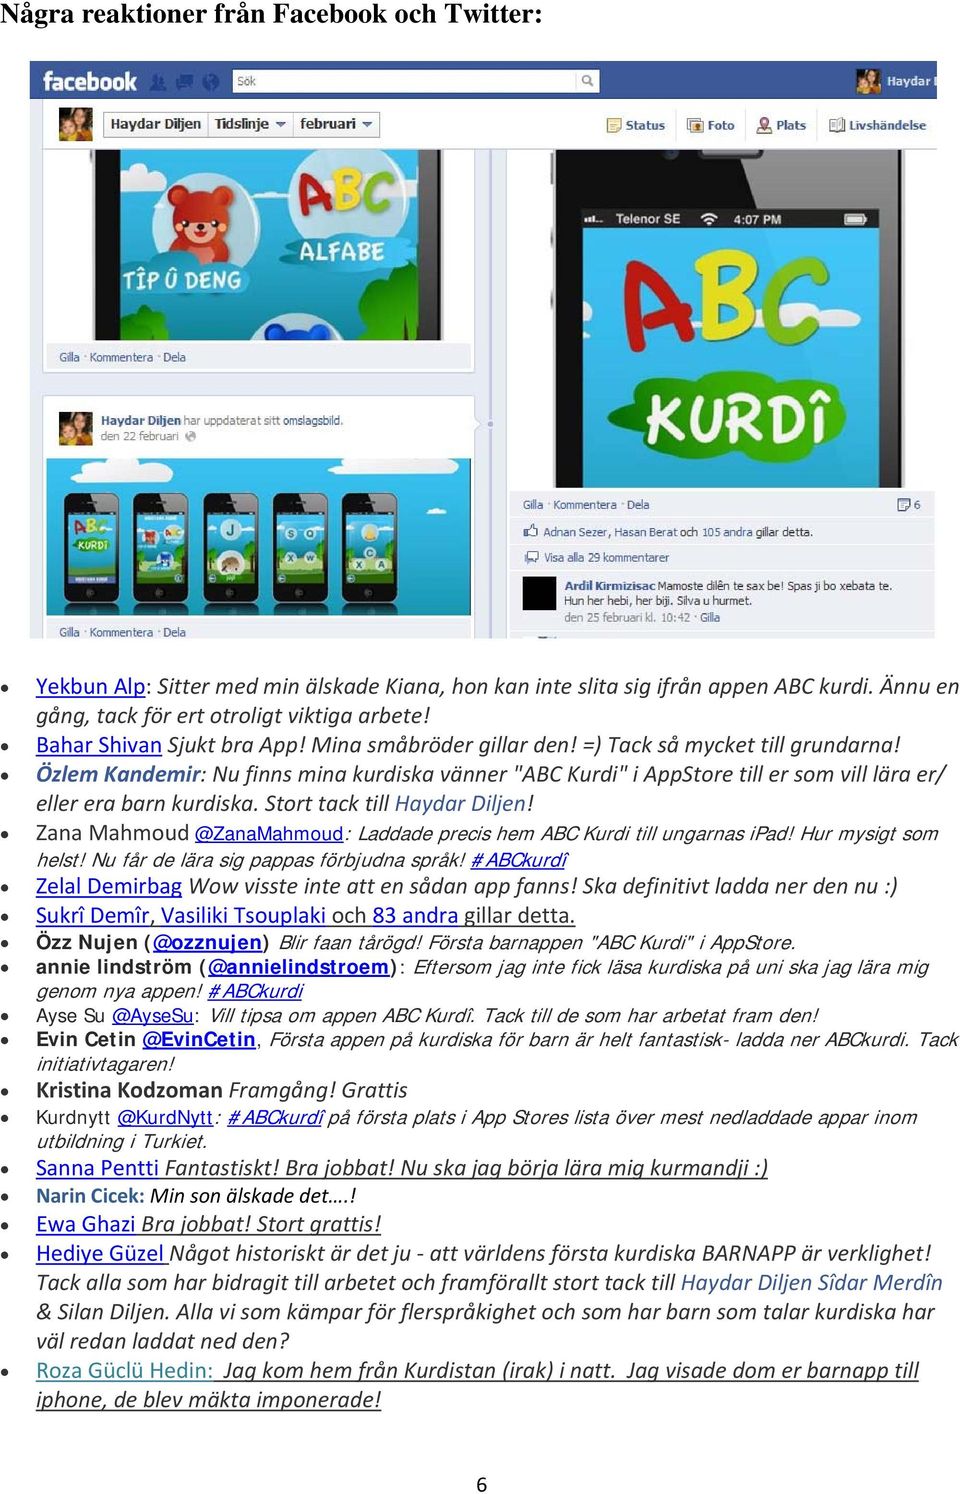 Özlem Kandemir: Nu finns mina kurdiska vänner "ABC Kurdi" i AppStore till er som vill lära er/ eller era barn kurdiska. Stort tack till Haydar Diljen!